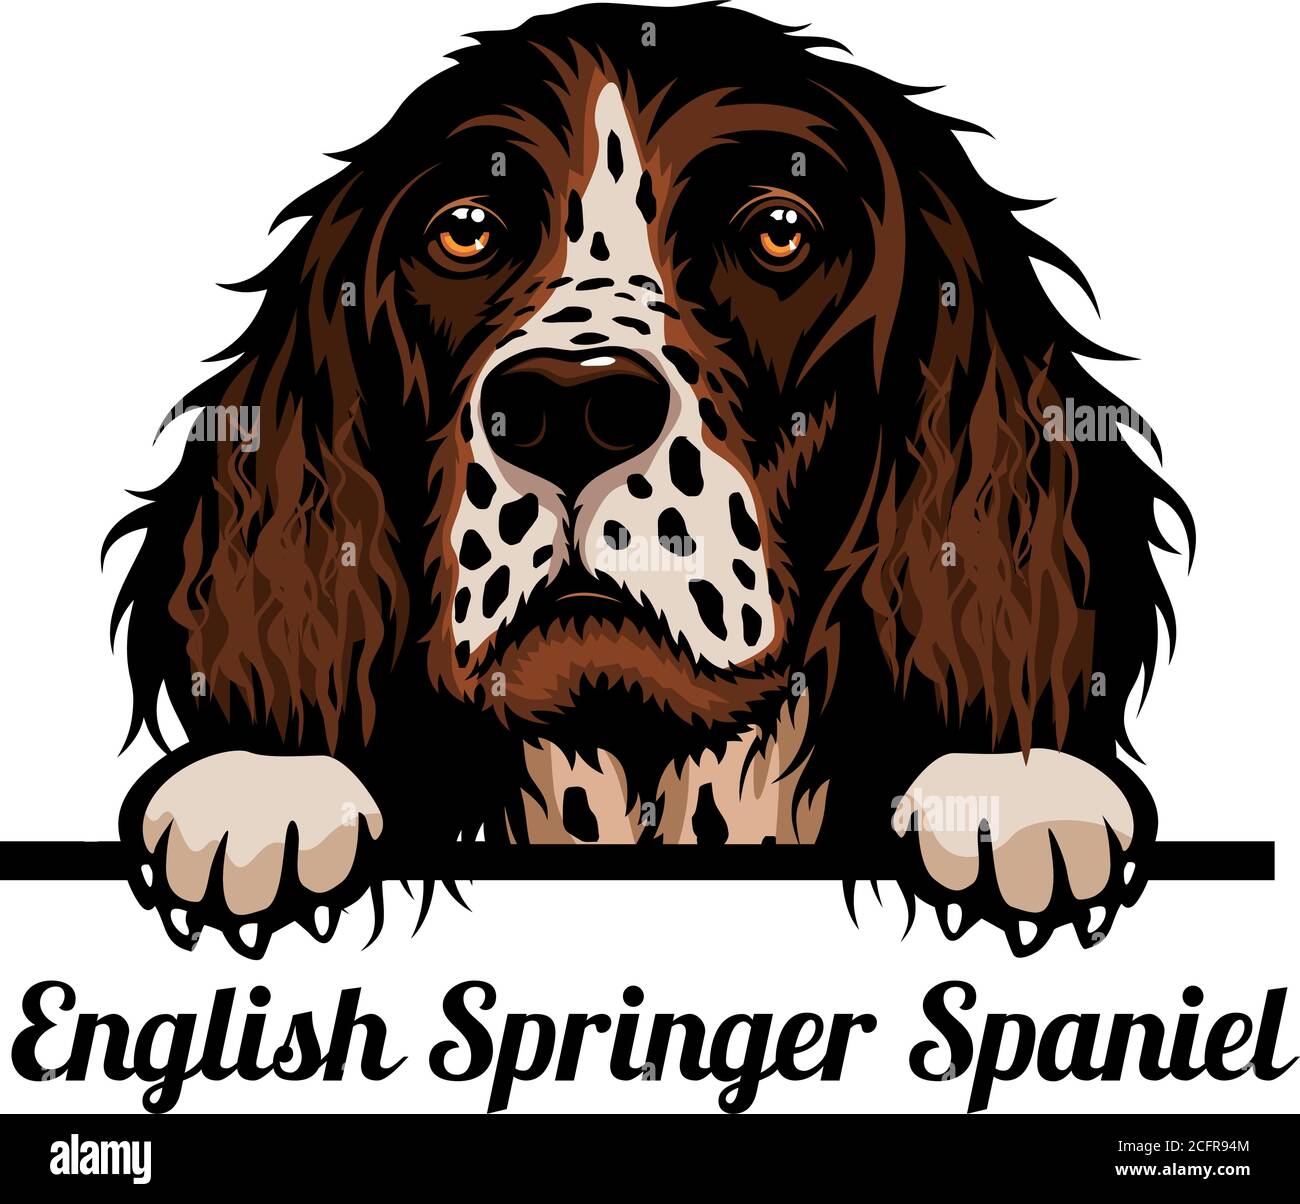 Head English Springer Spaniel - razza di cane. Immagine a colori di una testa di cani isolata su uno sfondo bianco Illustrazione Vettoriale